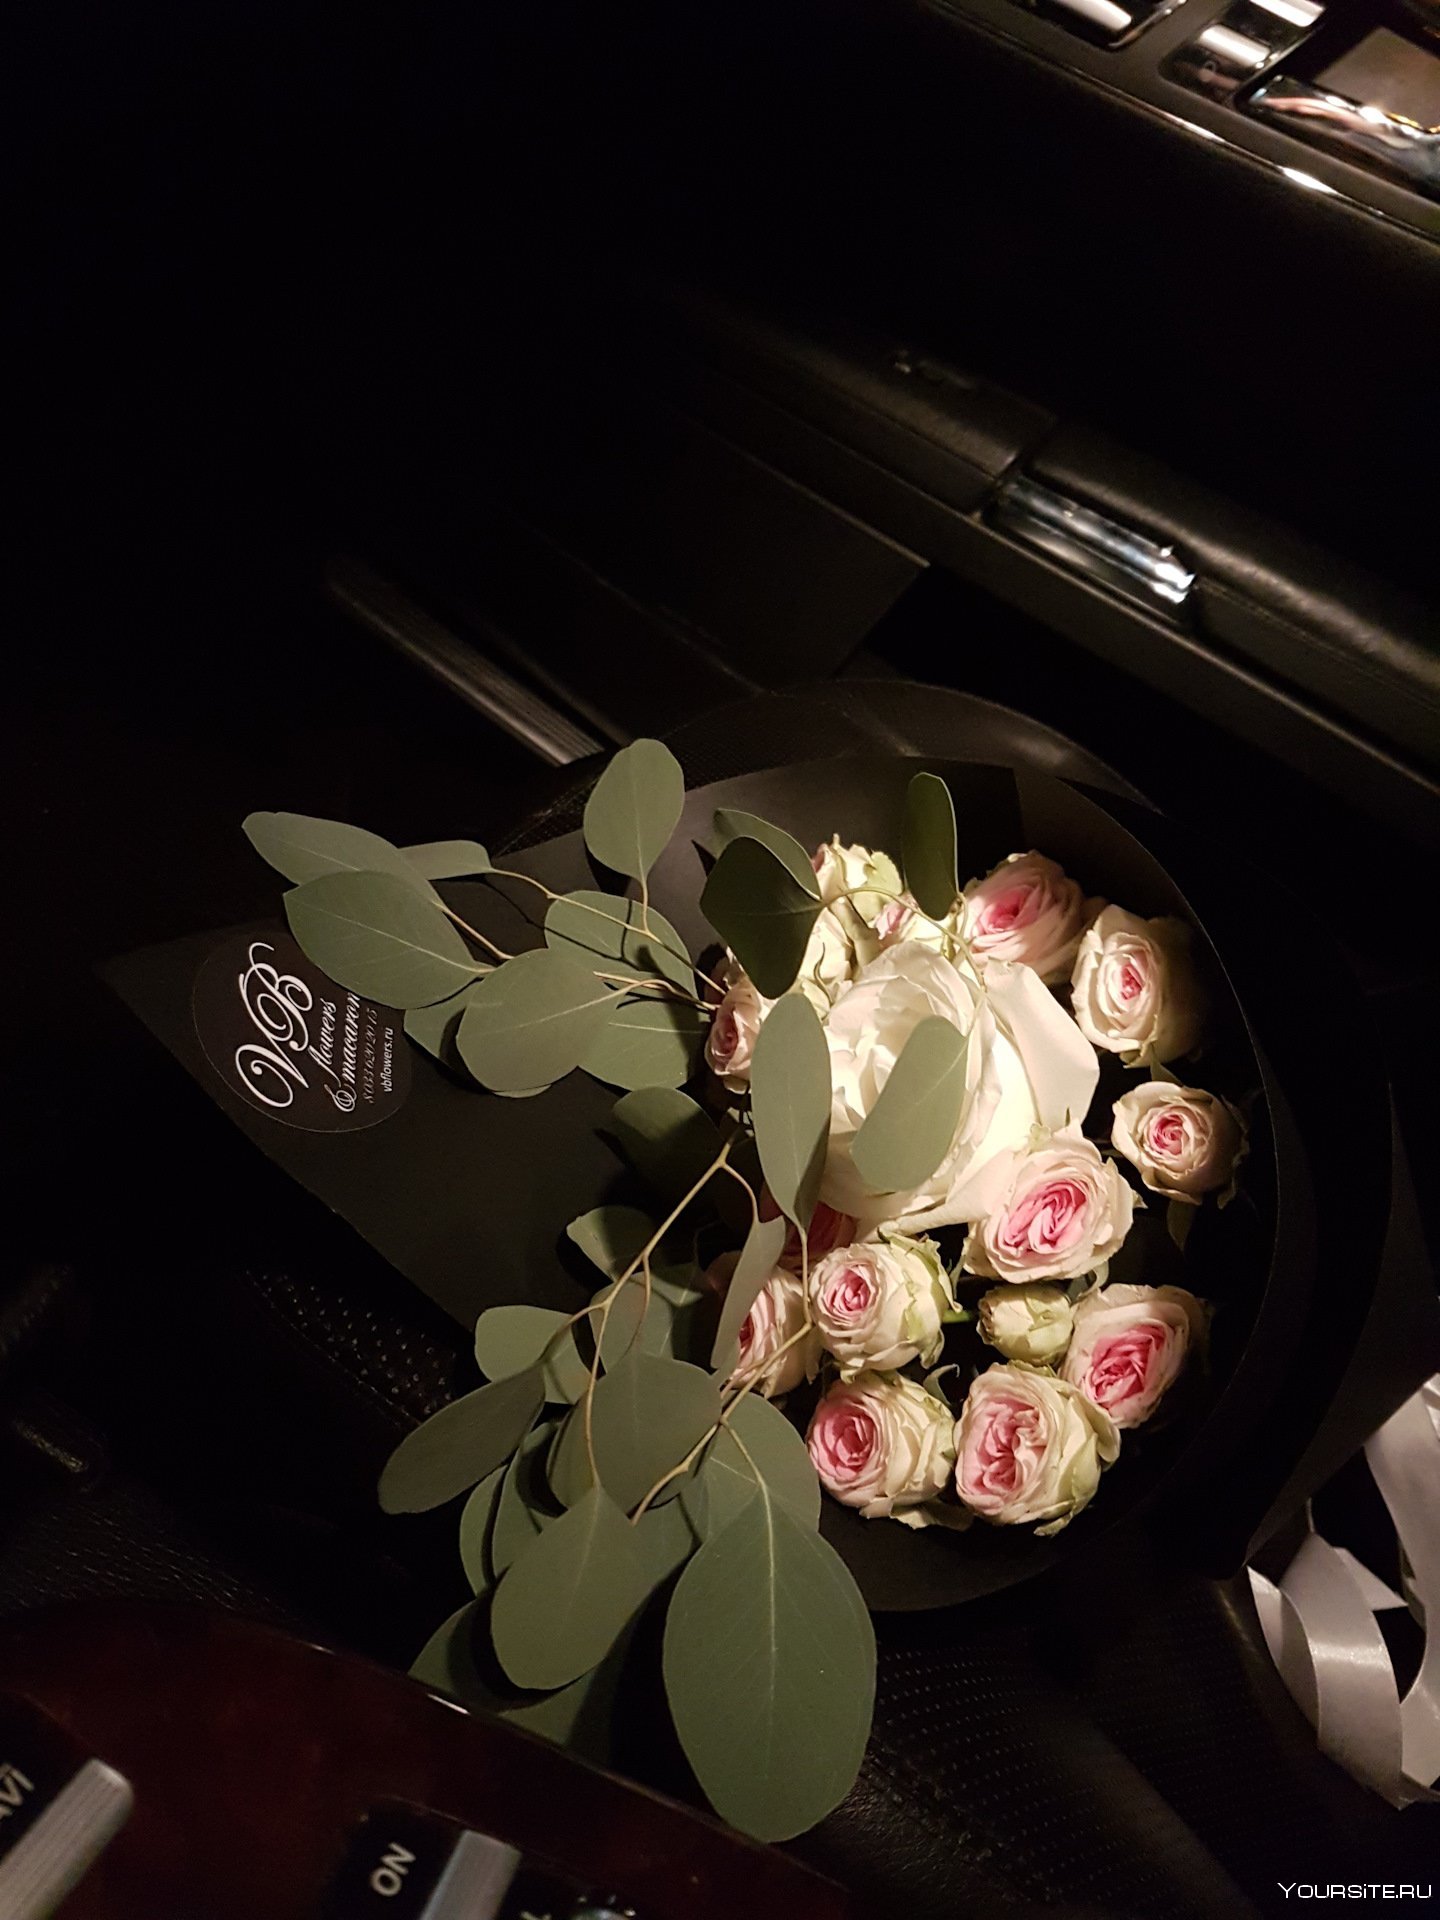 Фото цветов в машине реальные на коленках ночью